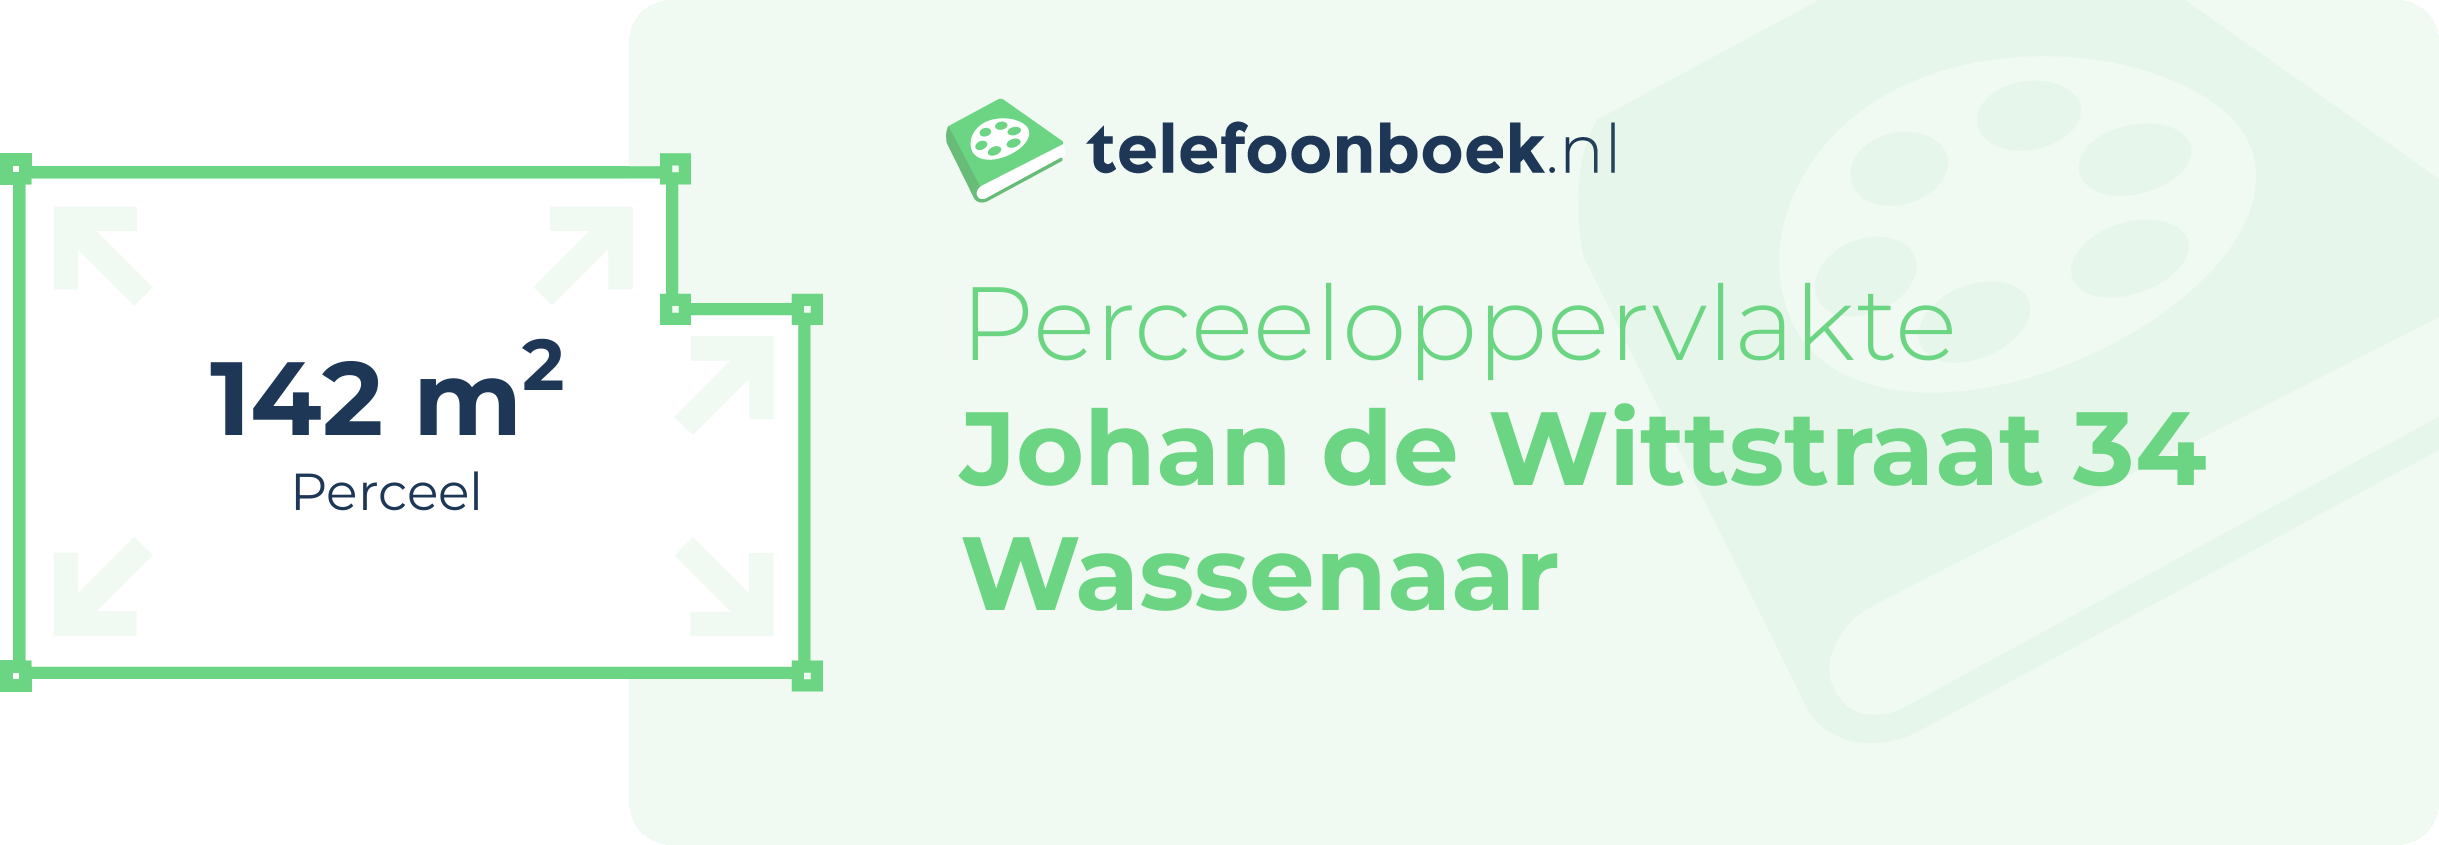 Perceeloppervlakte Johan De Wittstraat 34 Wassenaar